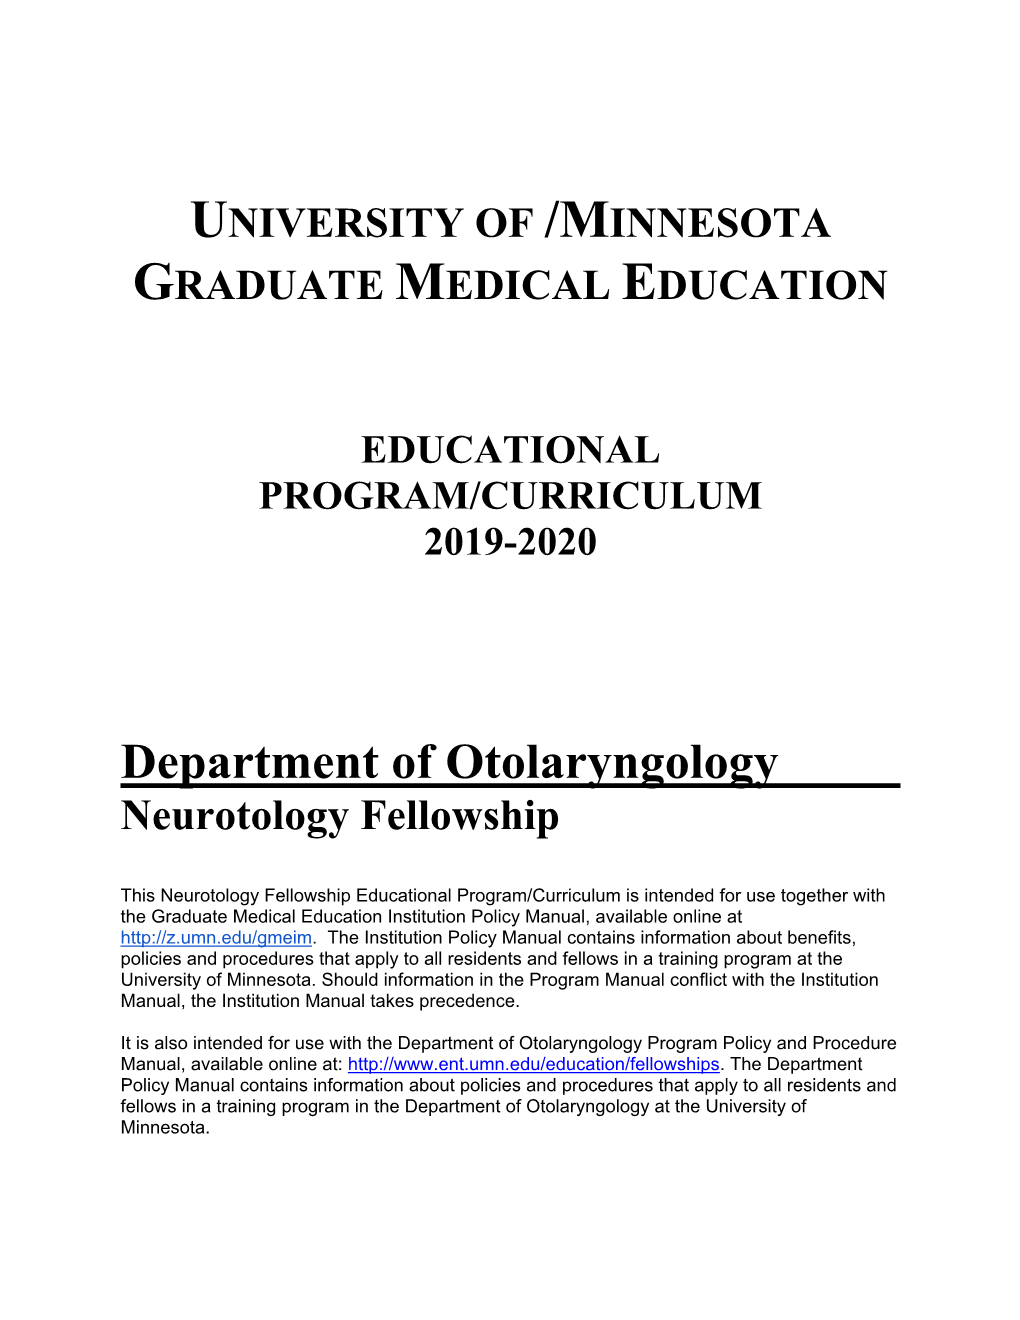 Department of Otolaryngology Neurotology Fellowship